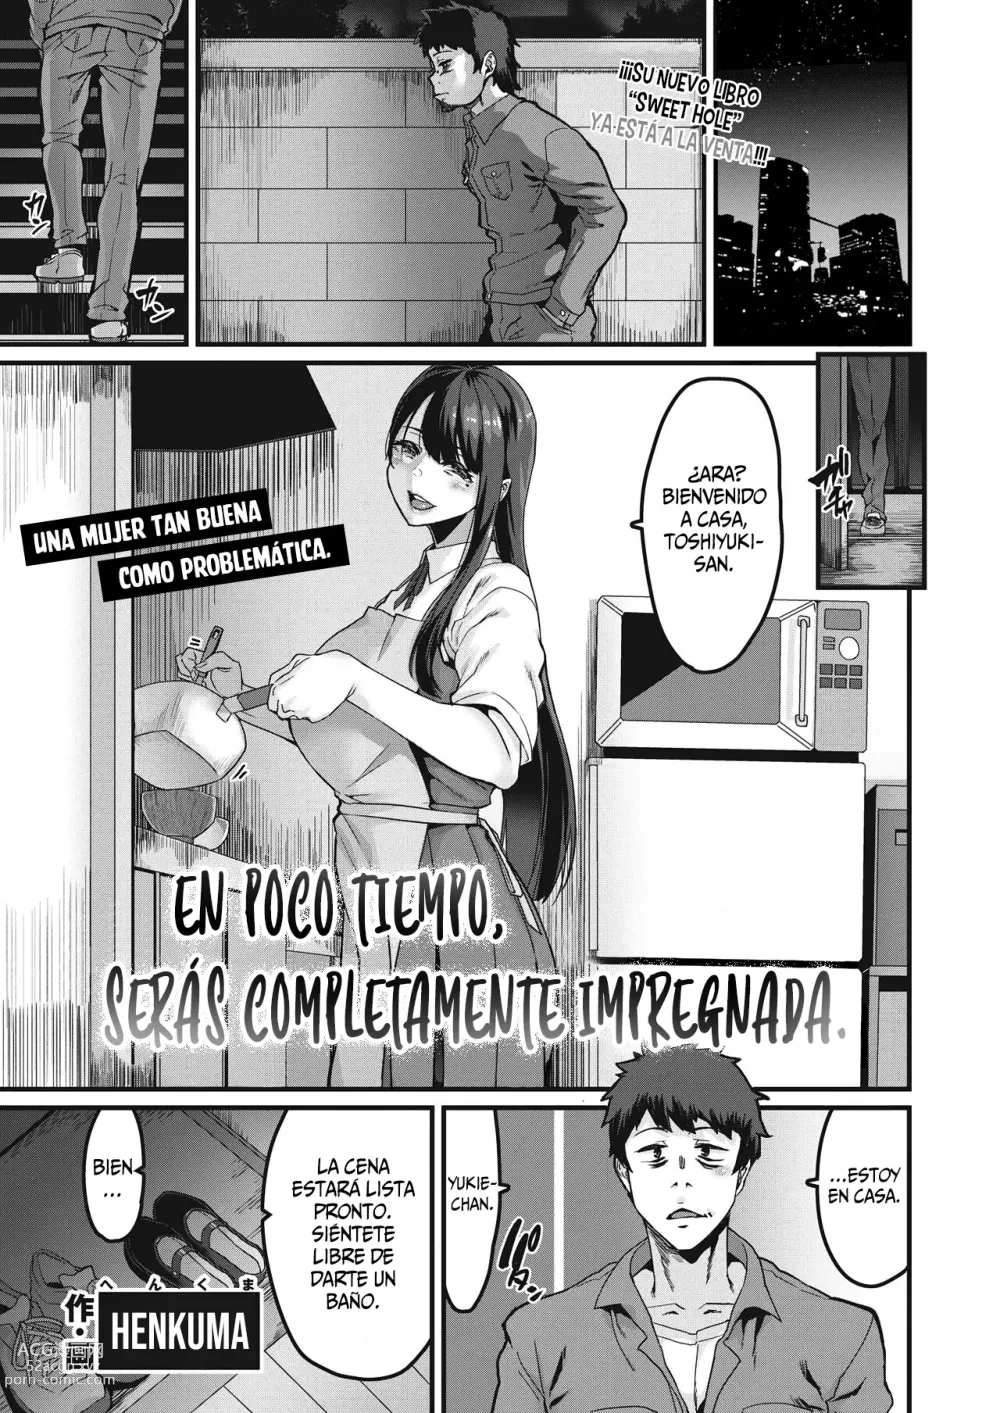 Page 1 of manga En Poco Tiempo Seras Completamente Impregnada.